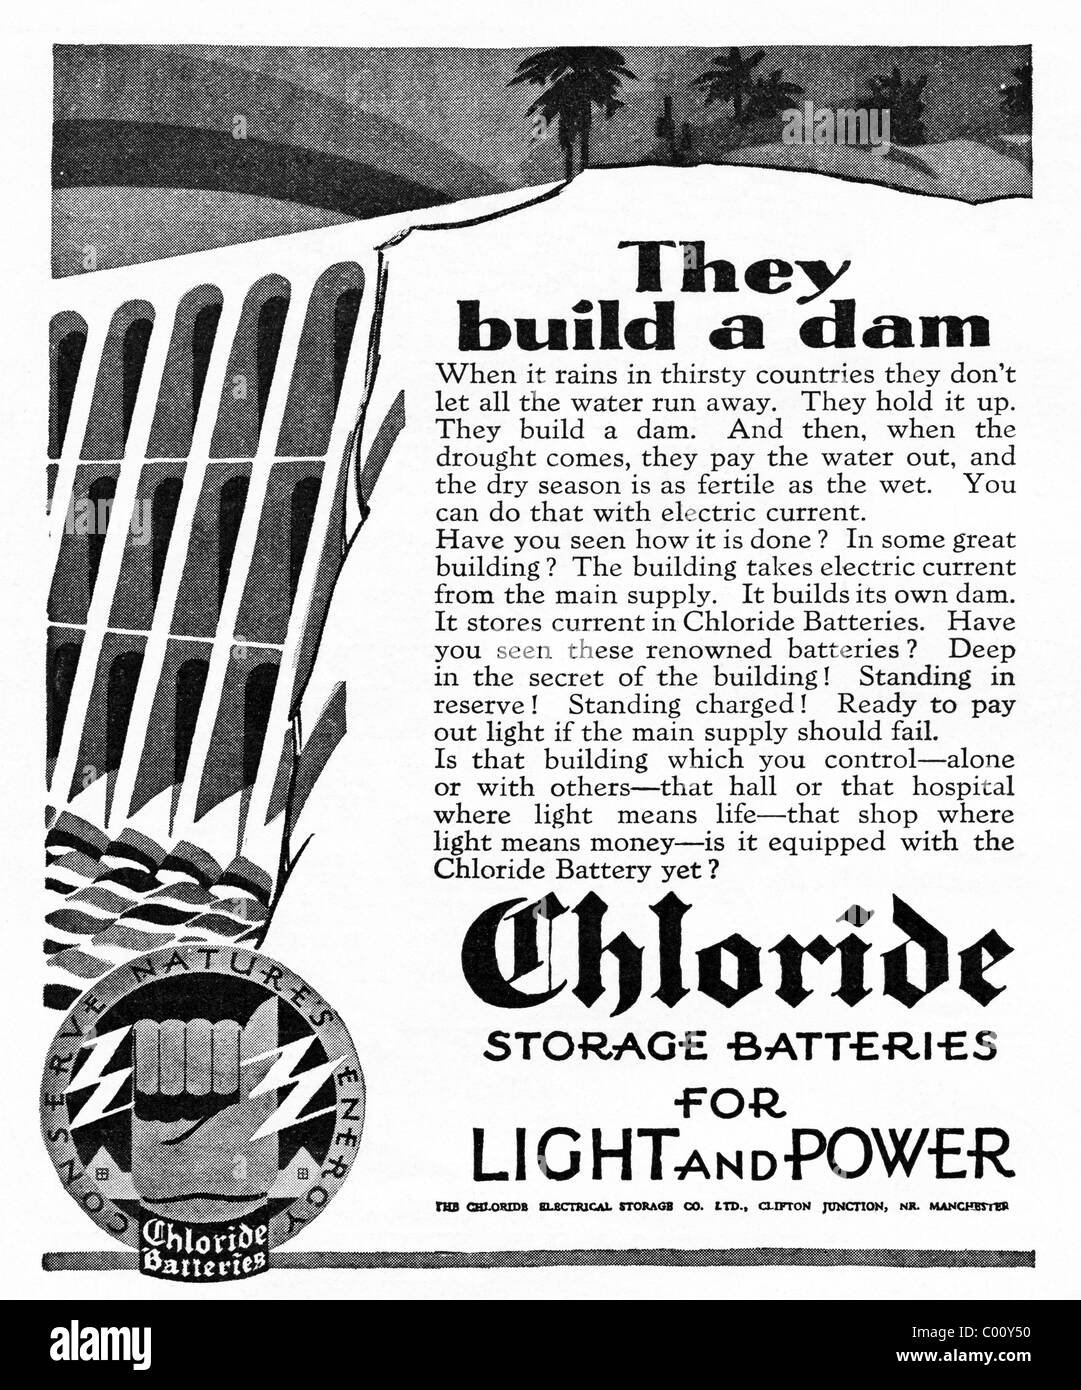 Années 1920 annonce dans une revue pour le chlorure de batteries pour la lumière et la puissance Banque D'Images